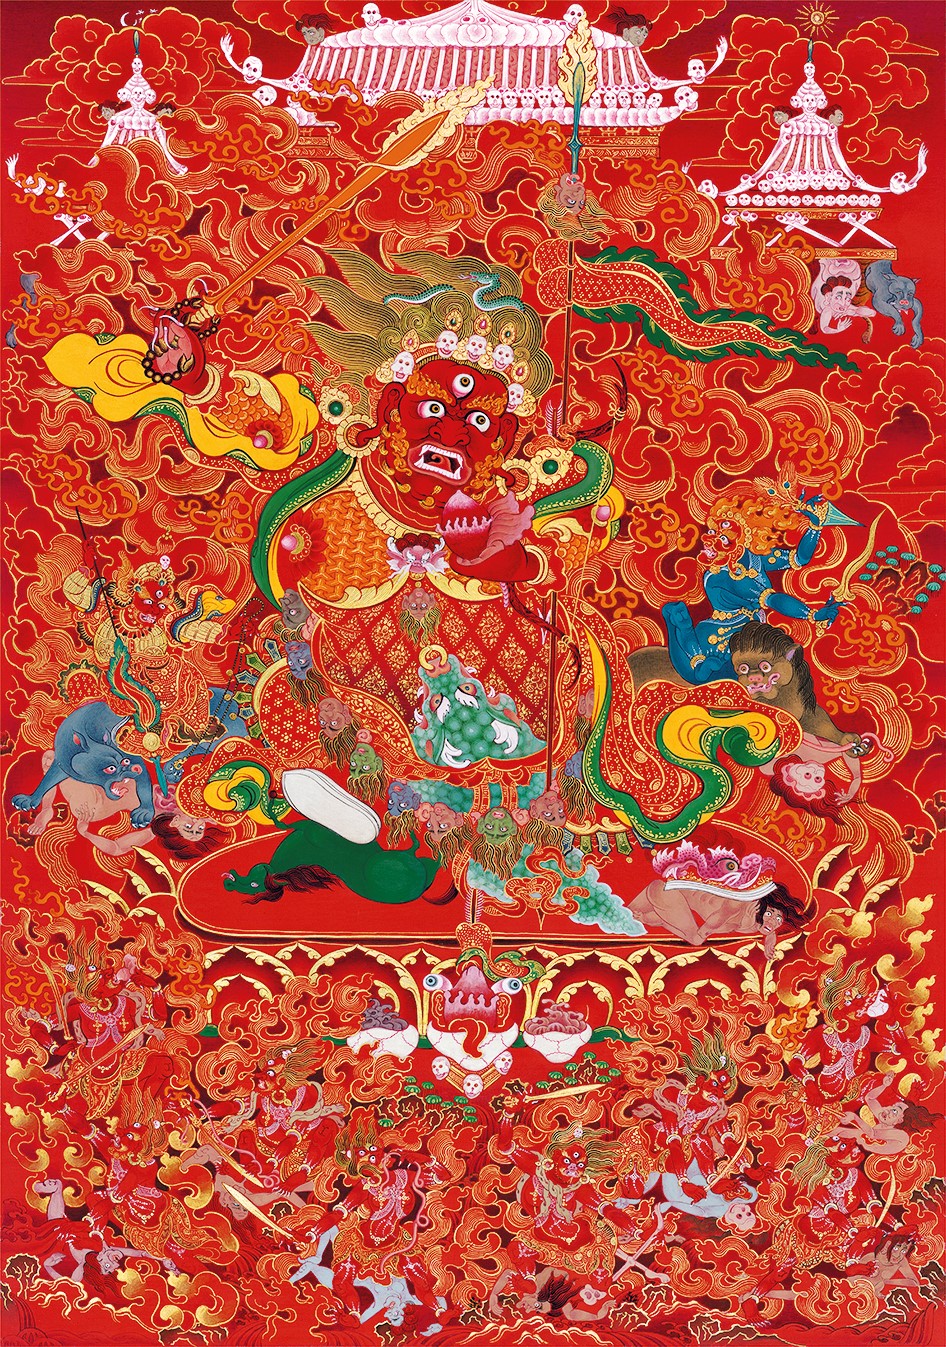 Un artiste doit passer cinq ans à apprendre cet art dans des temples bouddhistes pour être considéré comme un professionnel. Dudko est parvenu à apprendre les techniques de peinture nécessaires en un an et demi.